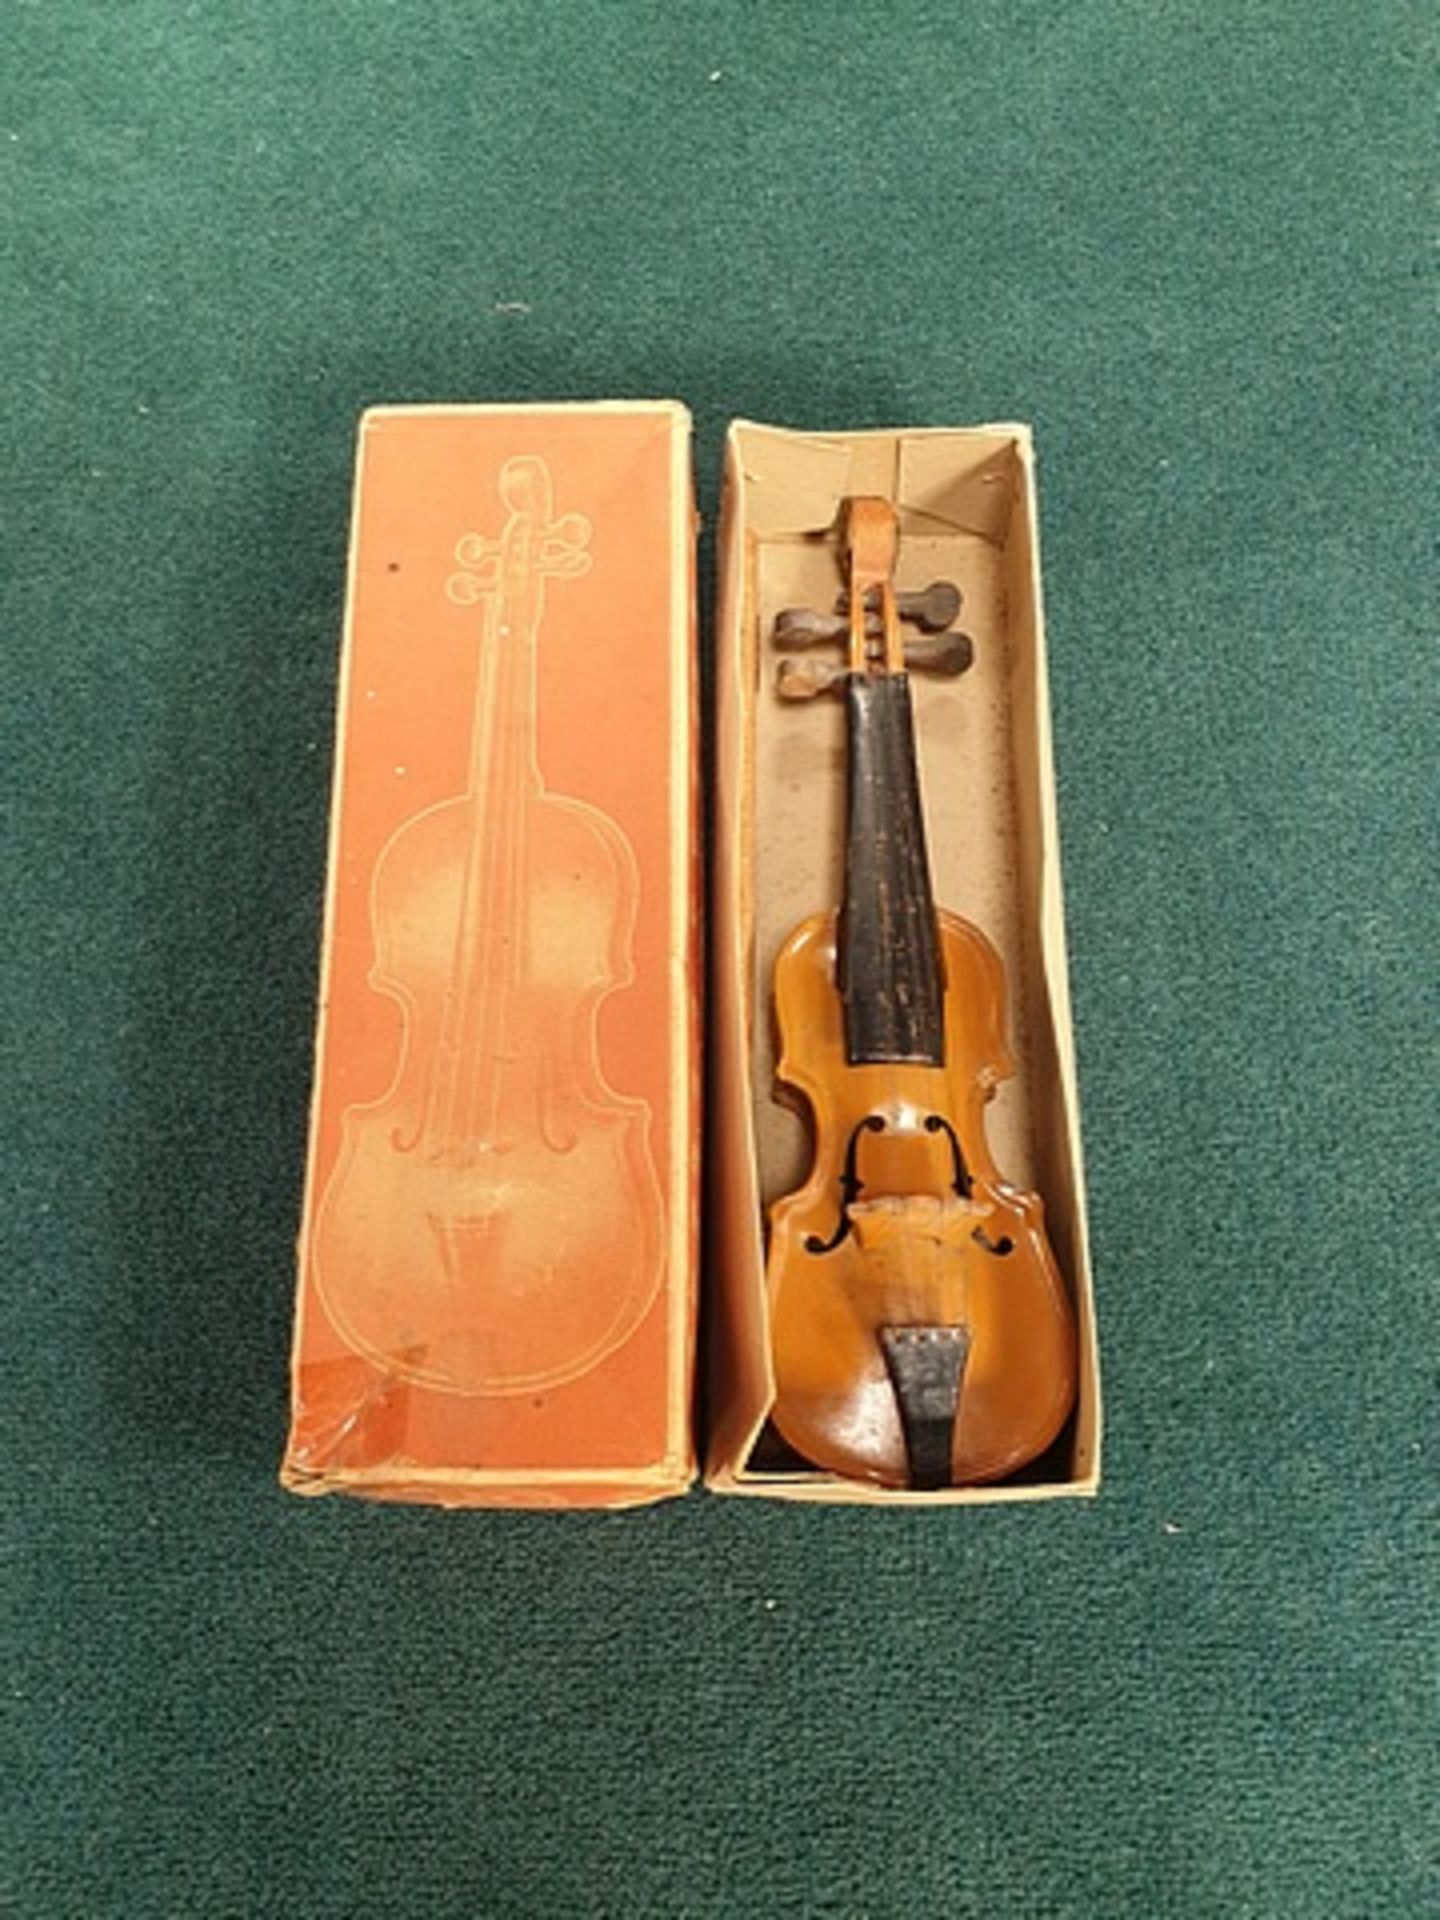 Minature Tin Cello Complete In Box - Image 3 of 3